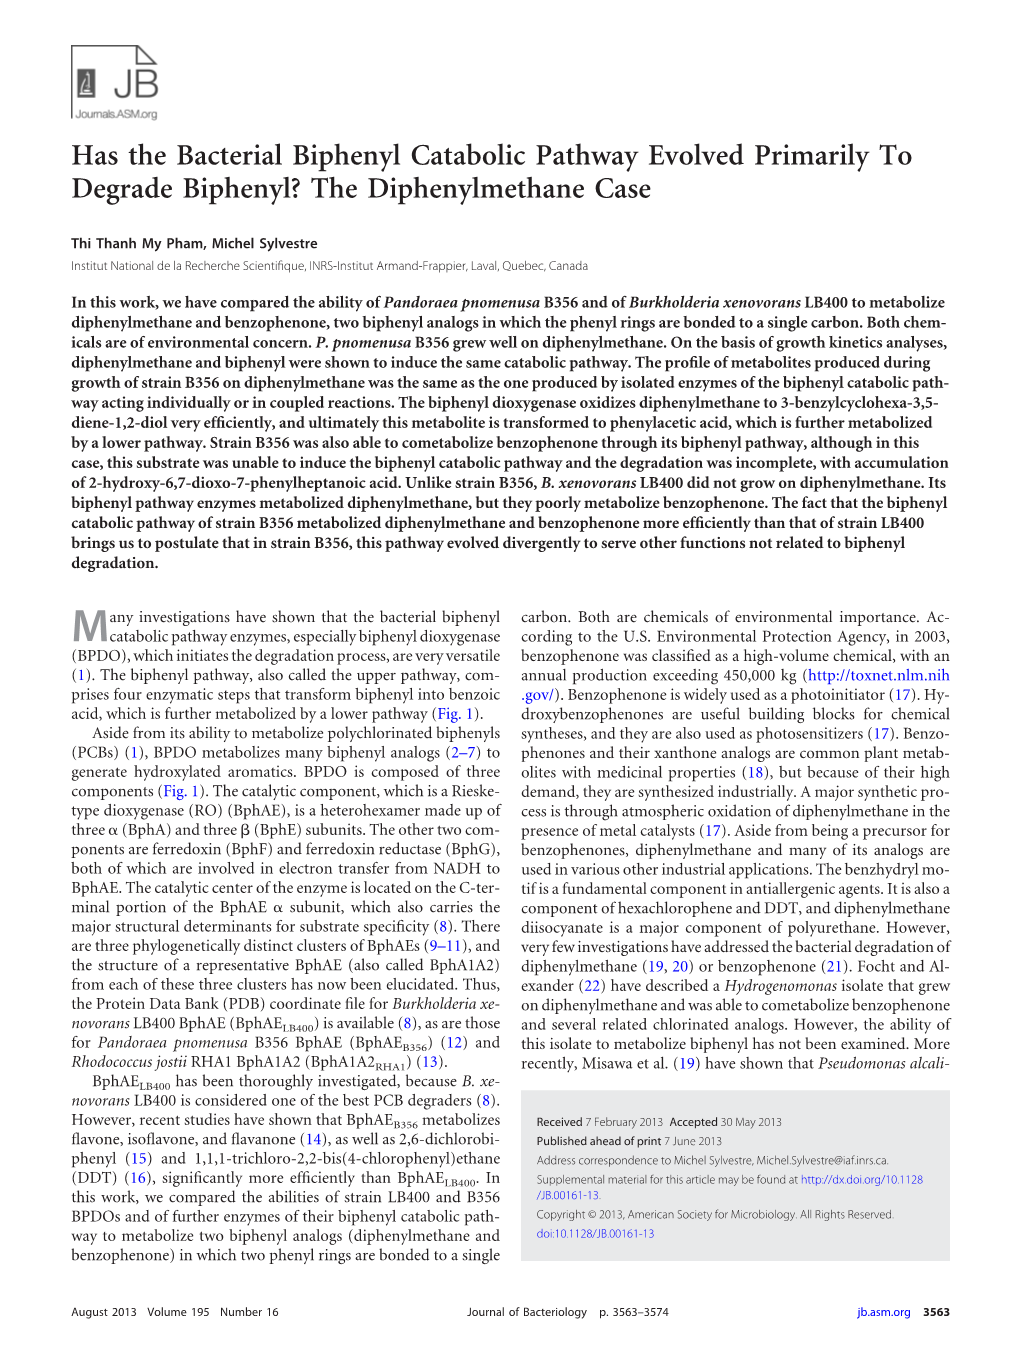 The Diphenylmethane Case